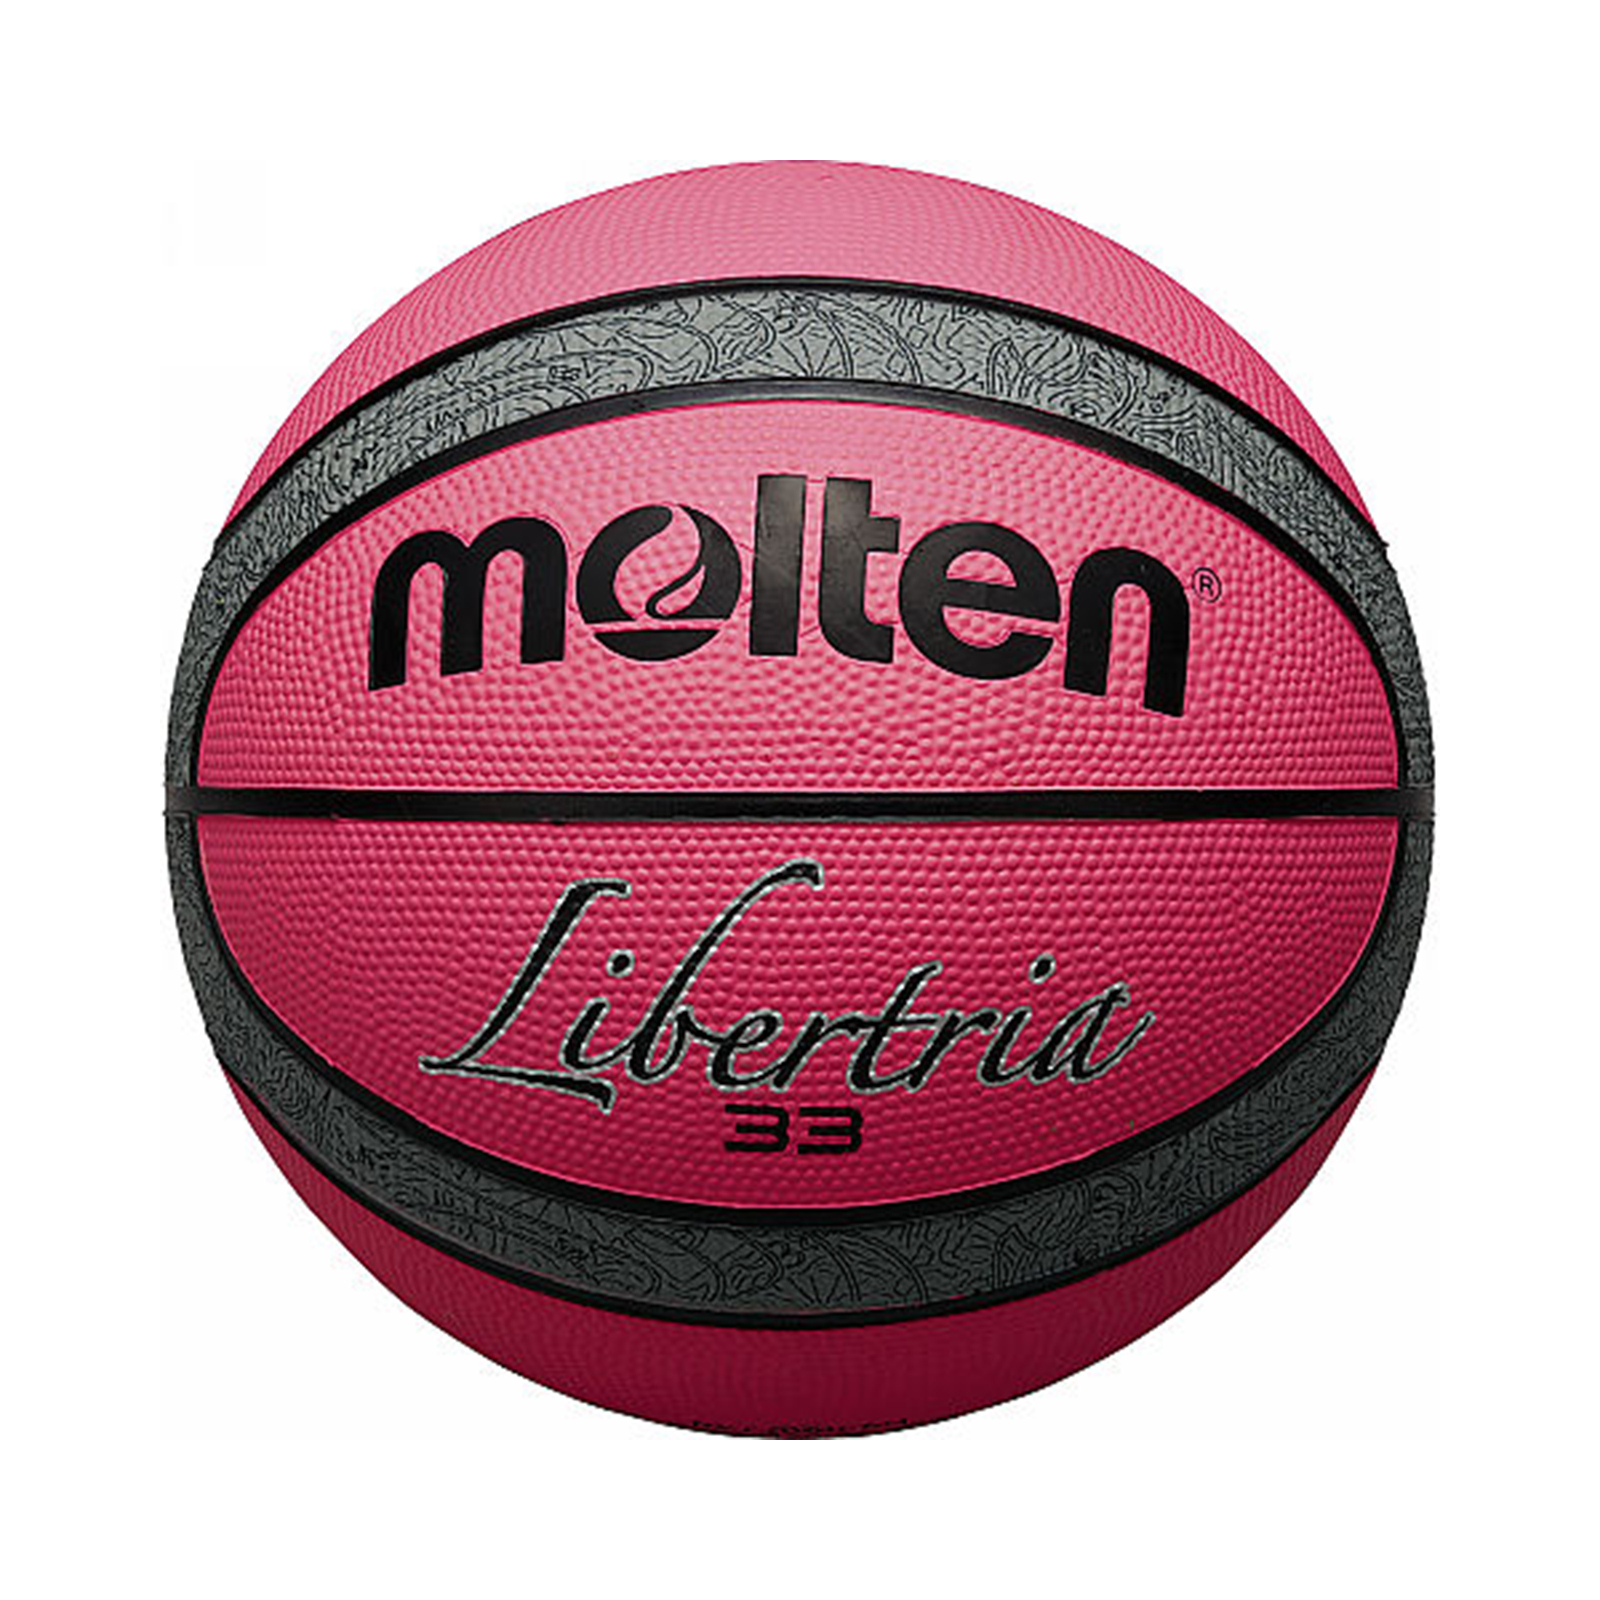 Balon de Baloncesto Molten B6T2000 Rosado - Dismovel